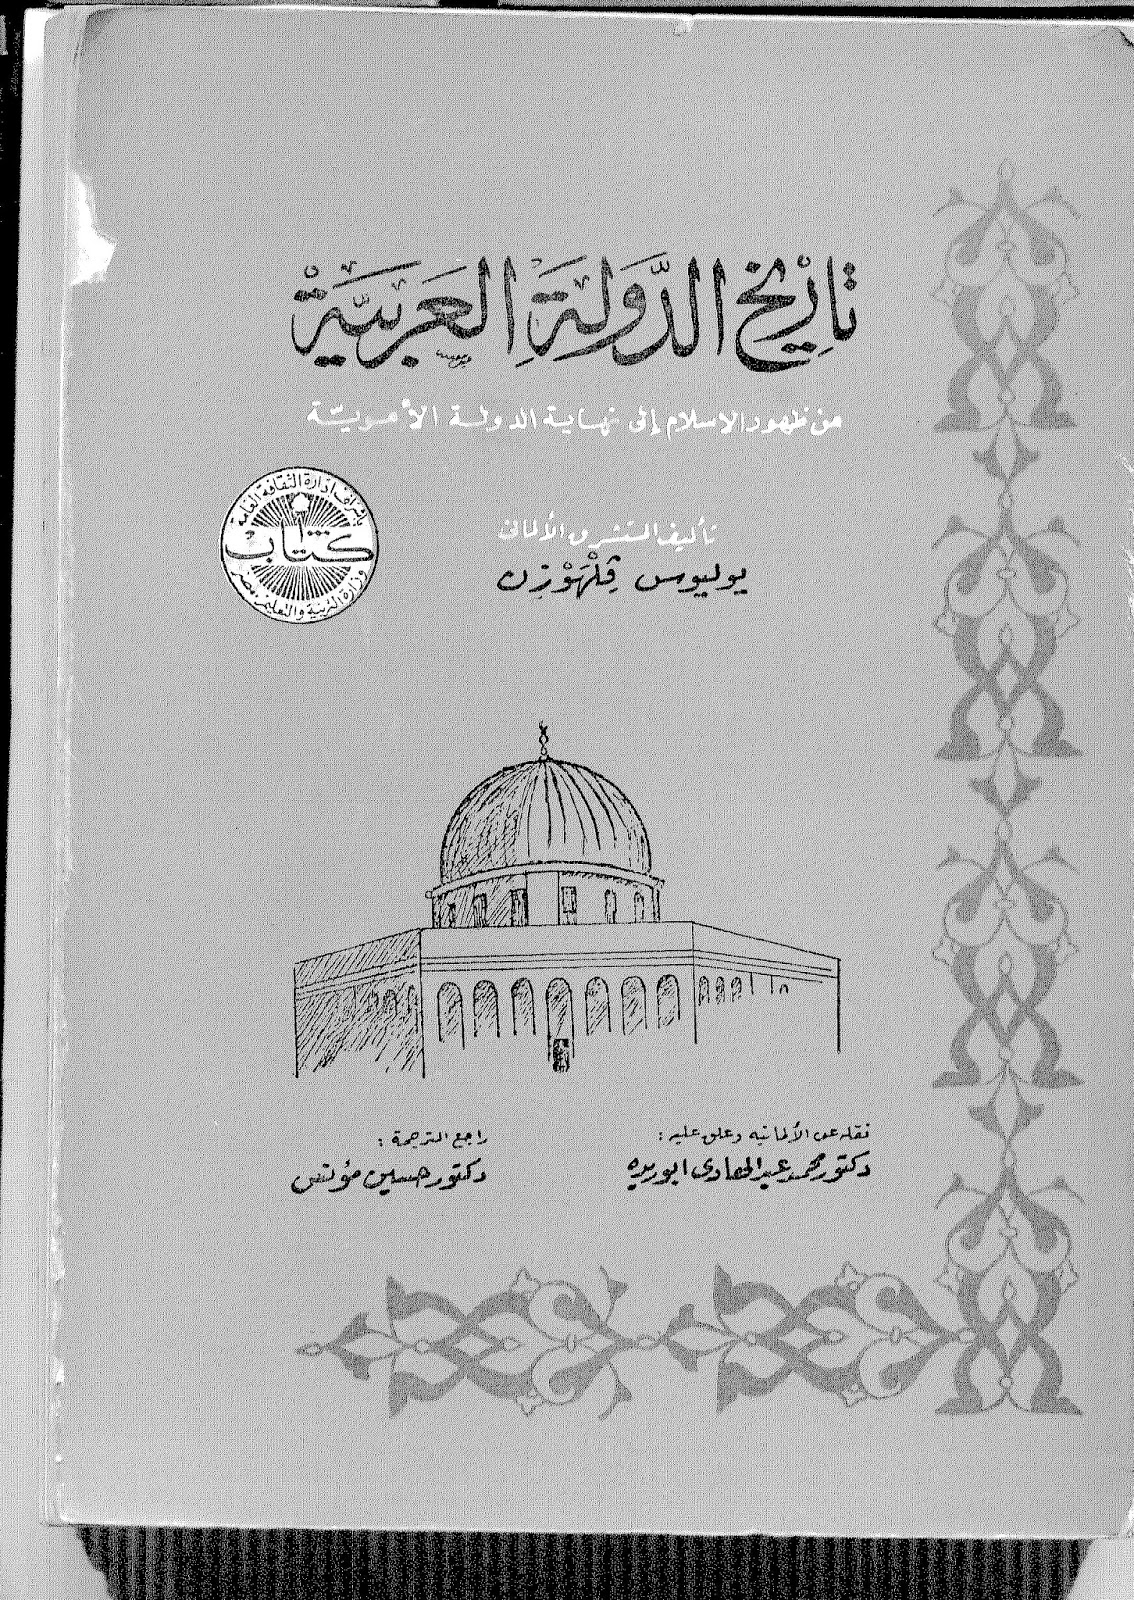 مكتبة التاريخ الاسلامي Pdf زمن العزة تحميل كتاب تاريخ الدولة العربية من ظهور الاسلام الى نهاية الدولة الأموية